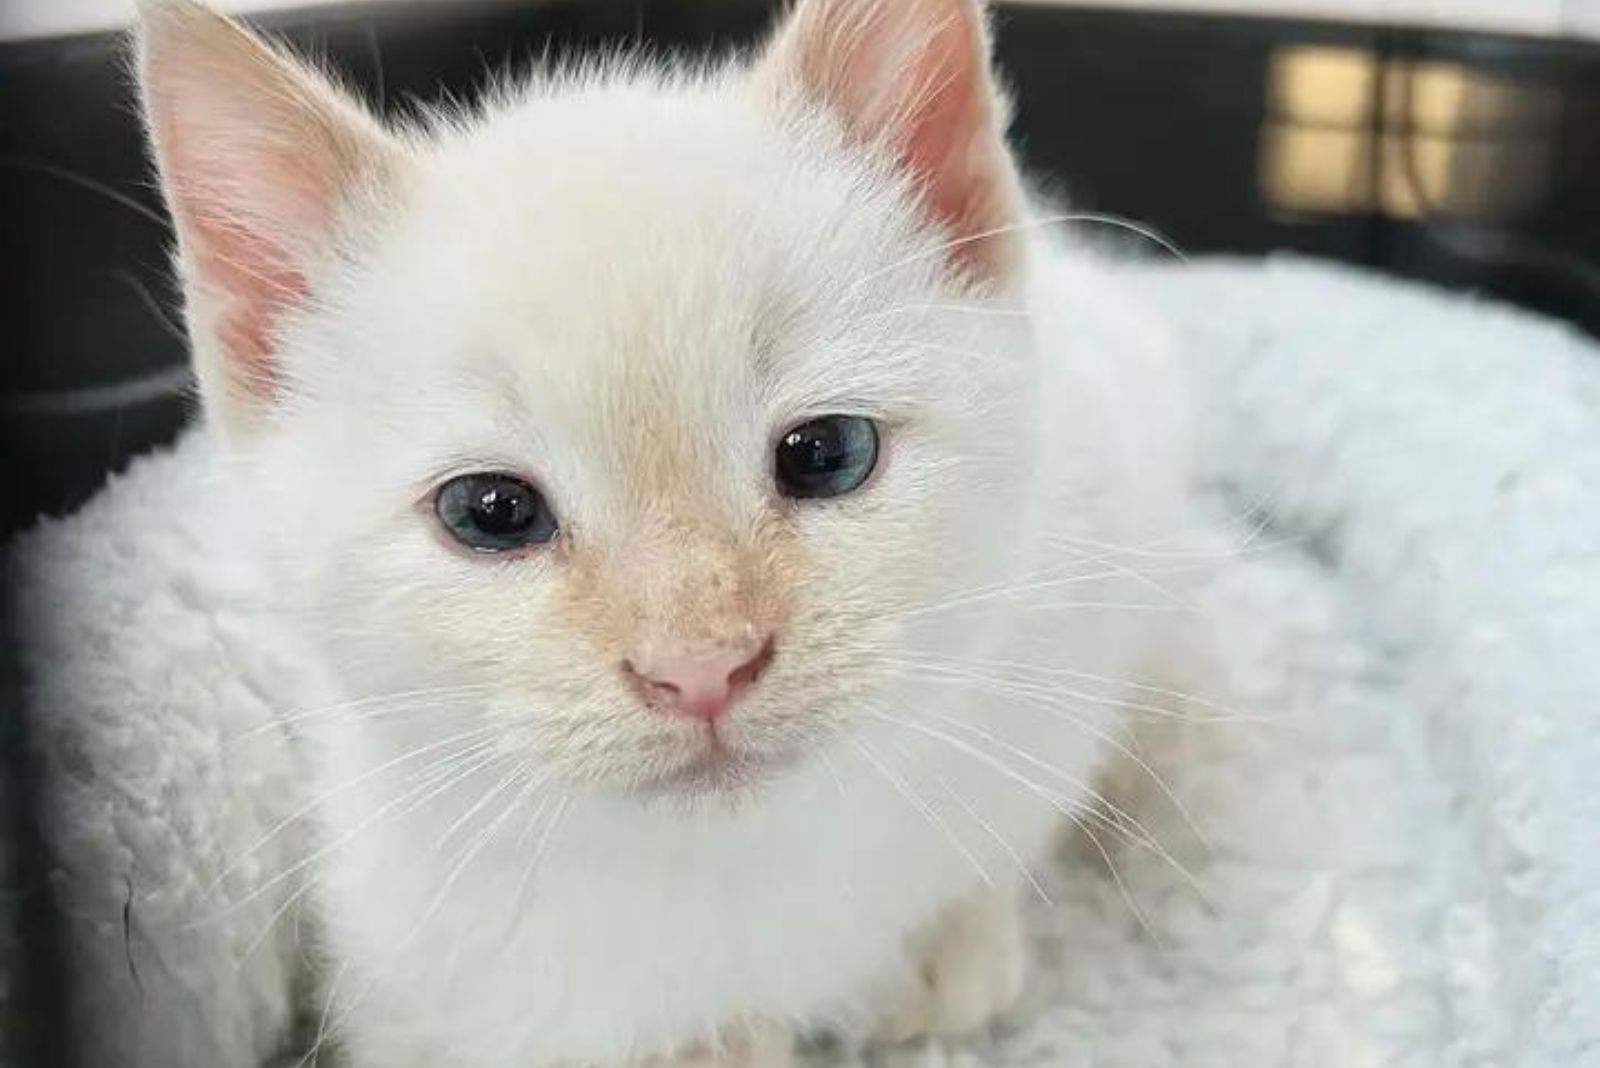 white kitten